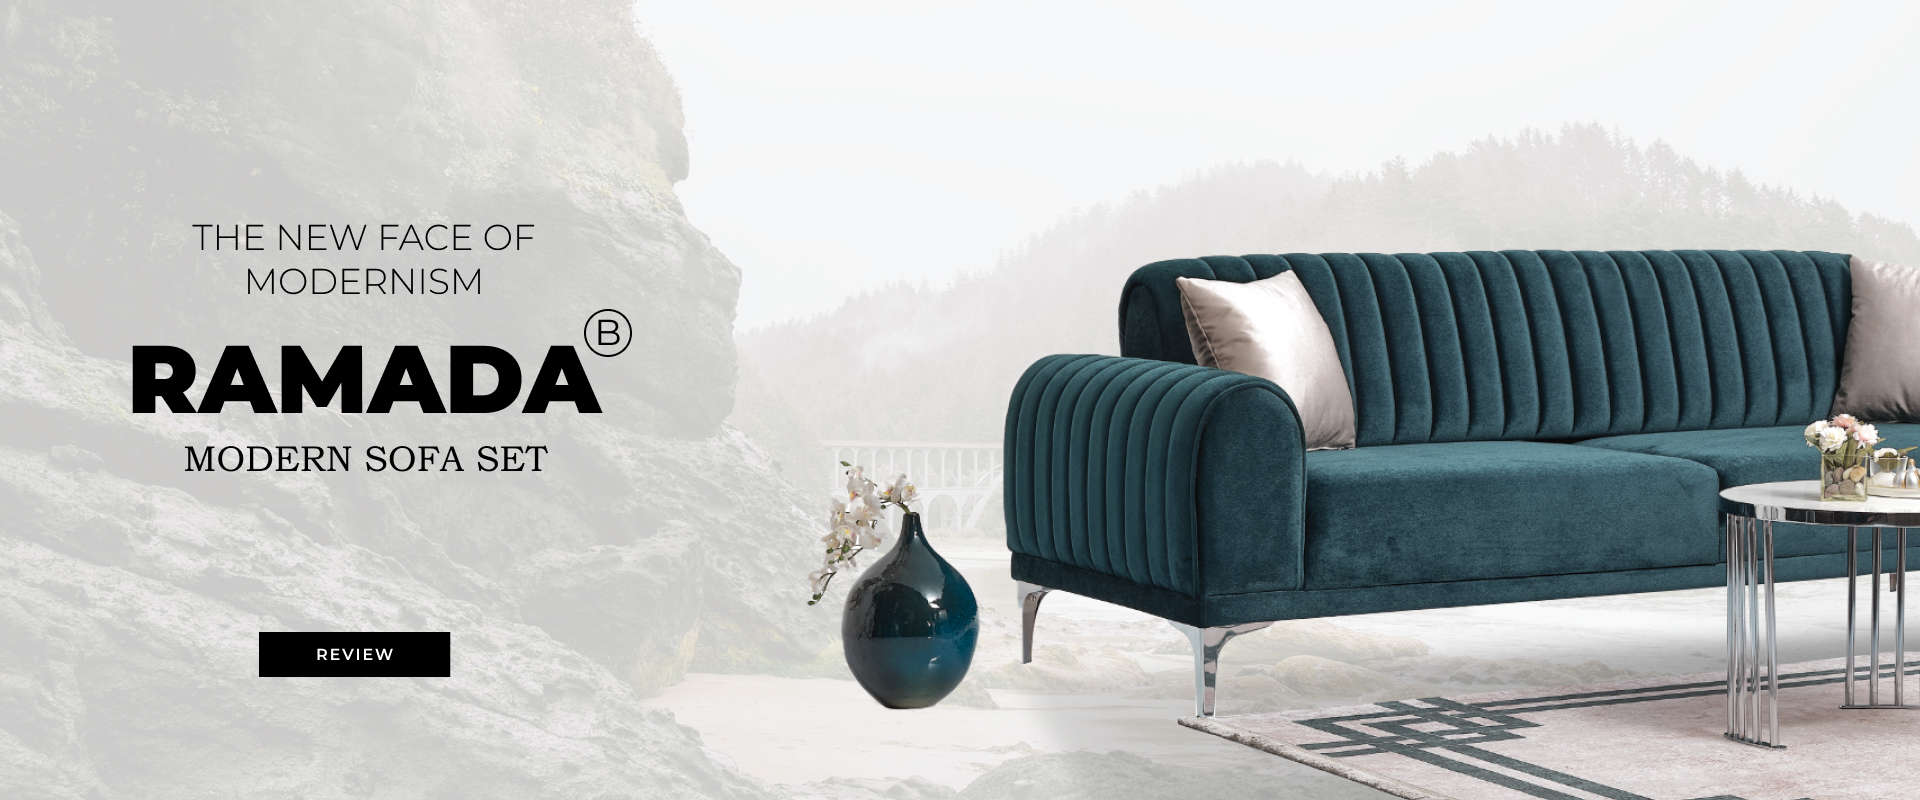 Ramada Sofa Set